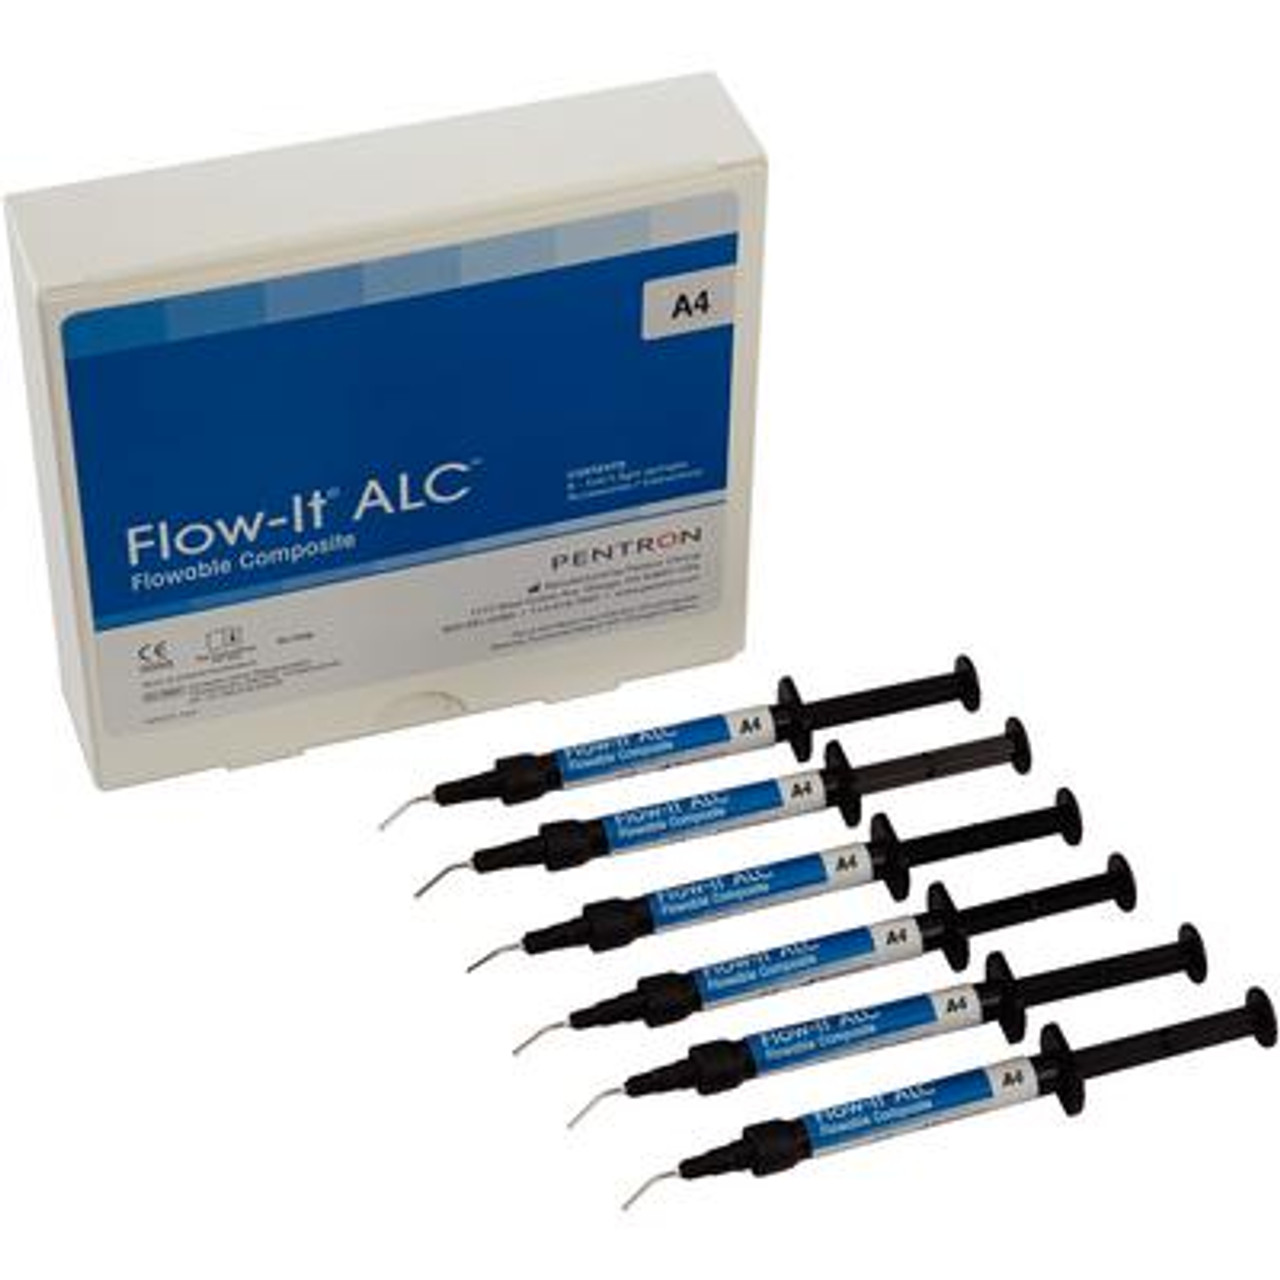 Pentron Flow-It ALC Flowable Composite A4 A0 Value Pack Syringe 6x1.5g & Tips